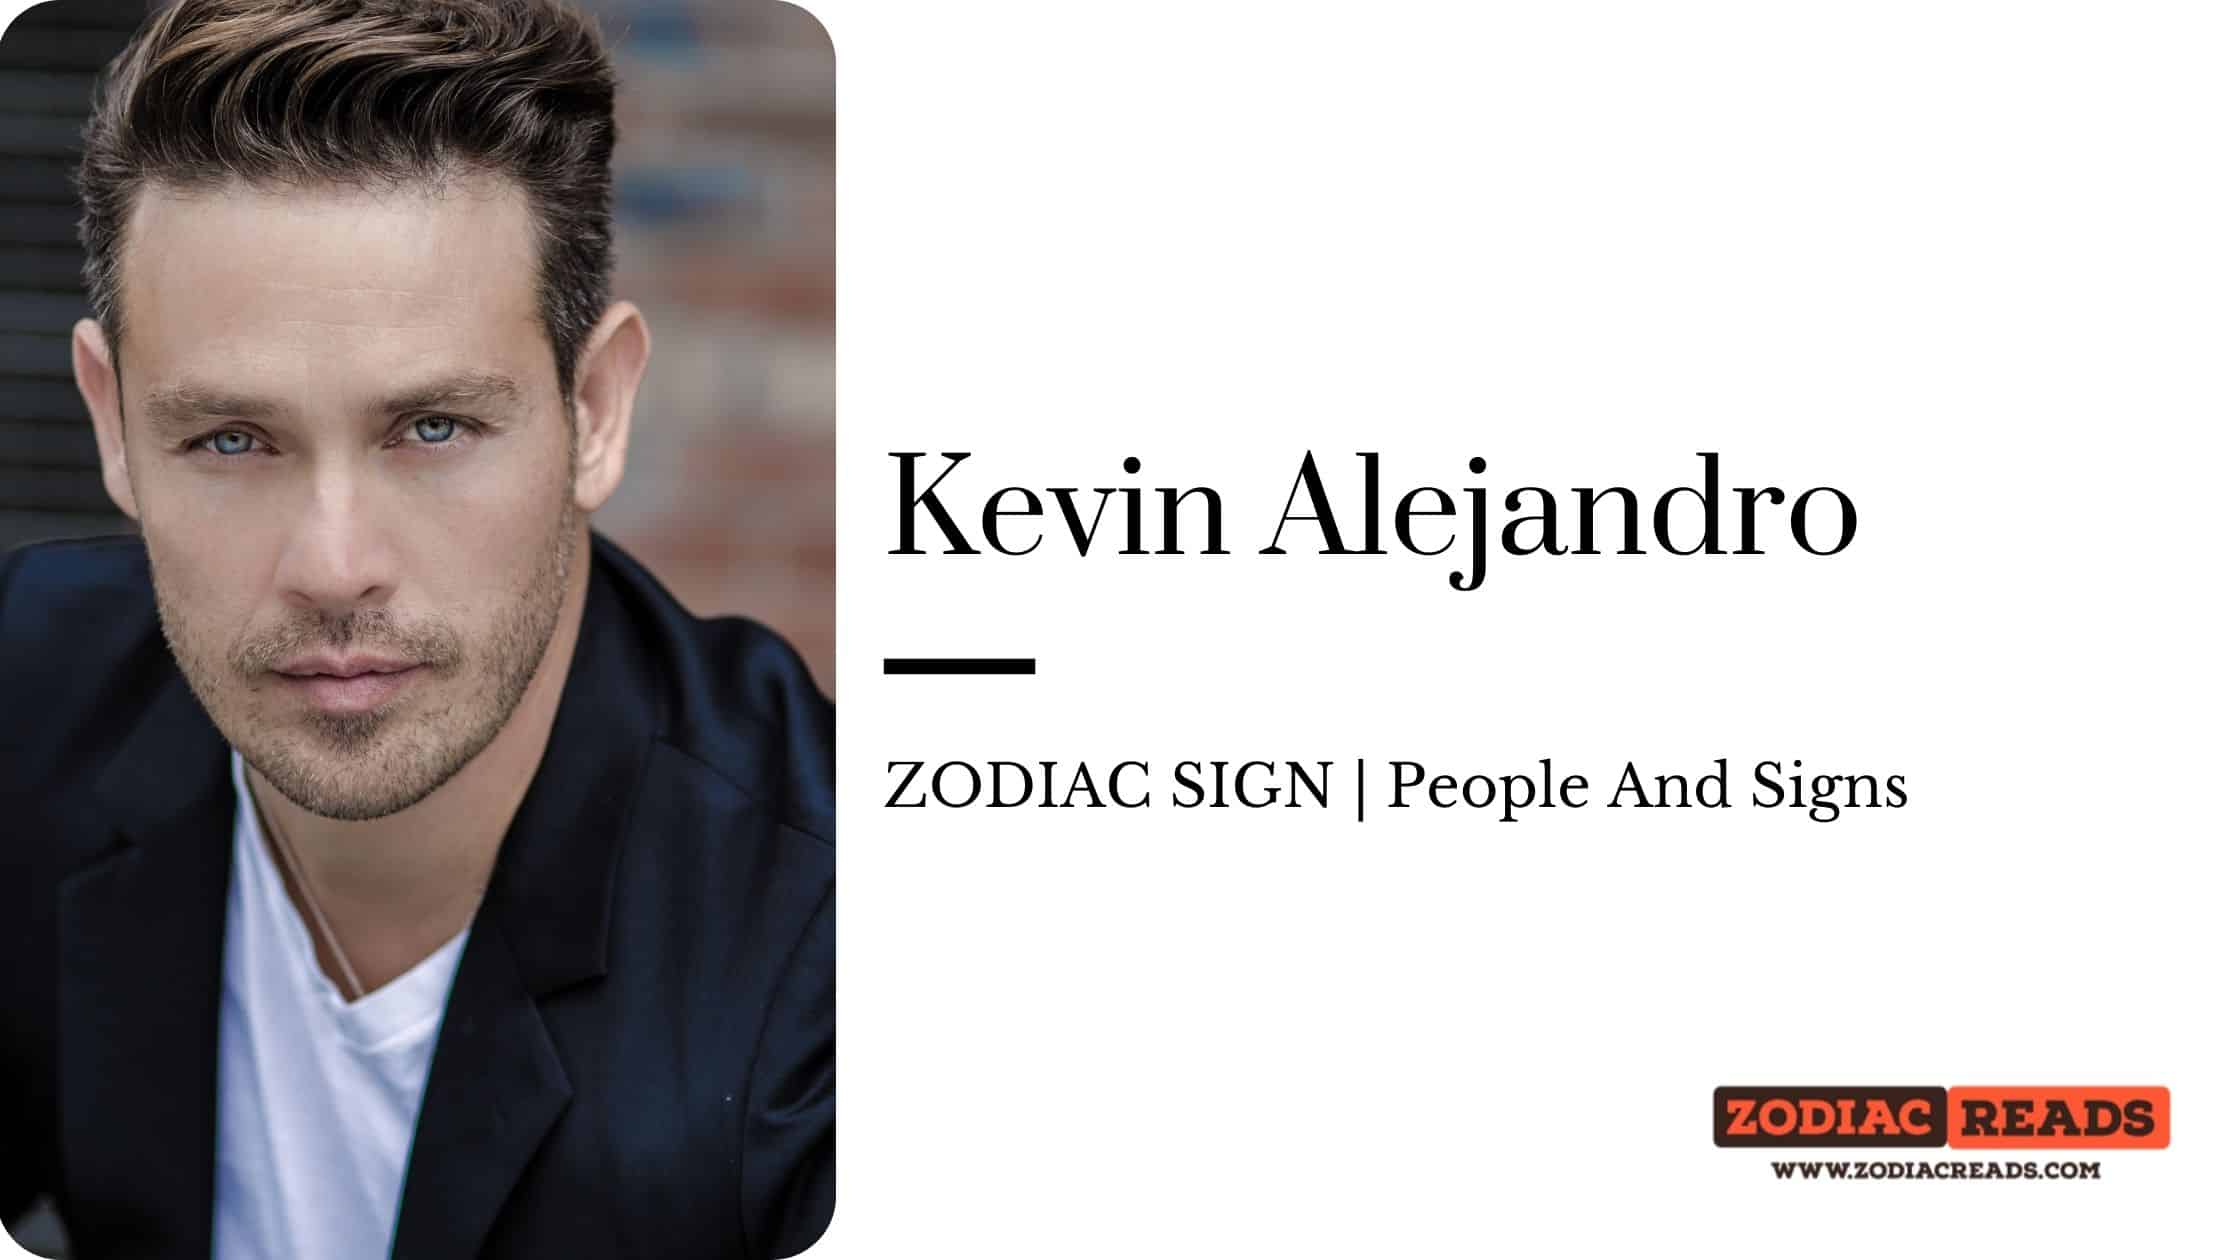 Kevin Alejandro zodiac